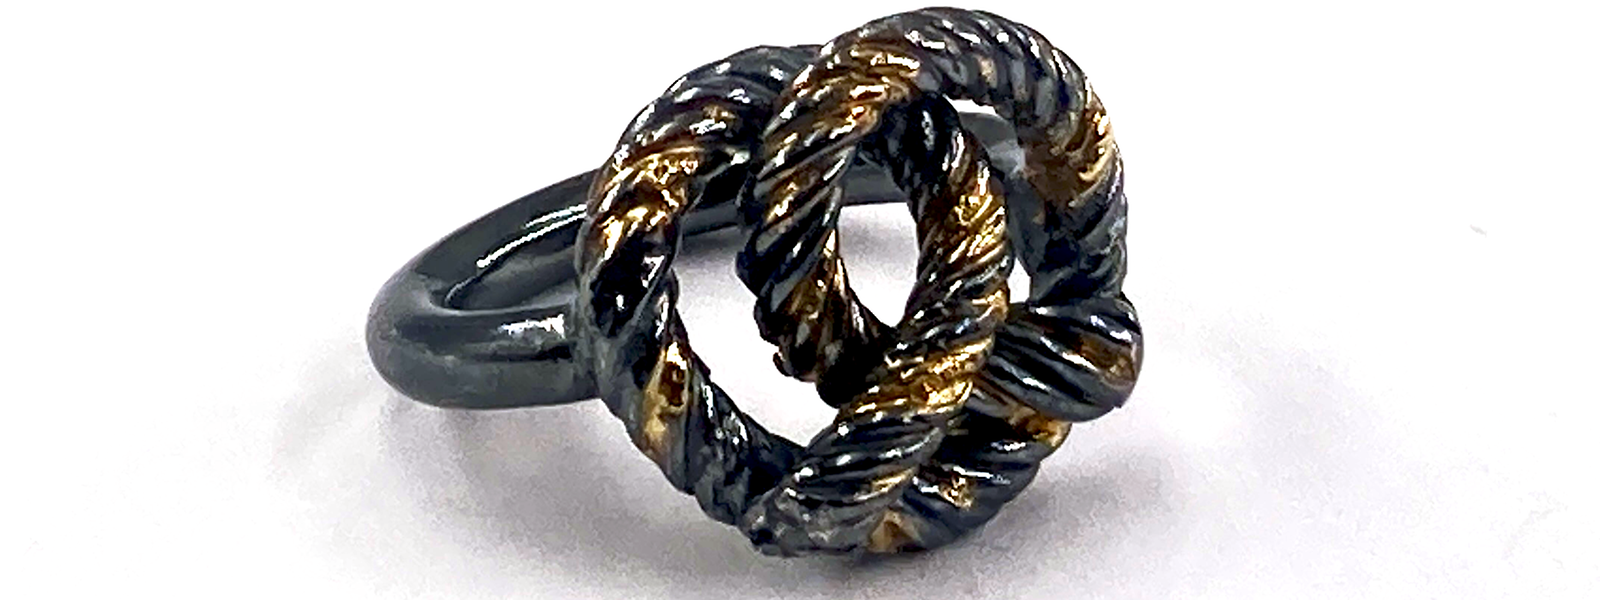 Diese Brezel sieht zum Anbeißen aus: Ring aus geschwärztem Silber mit Goldflächen.